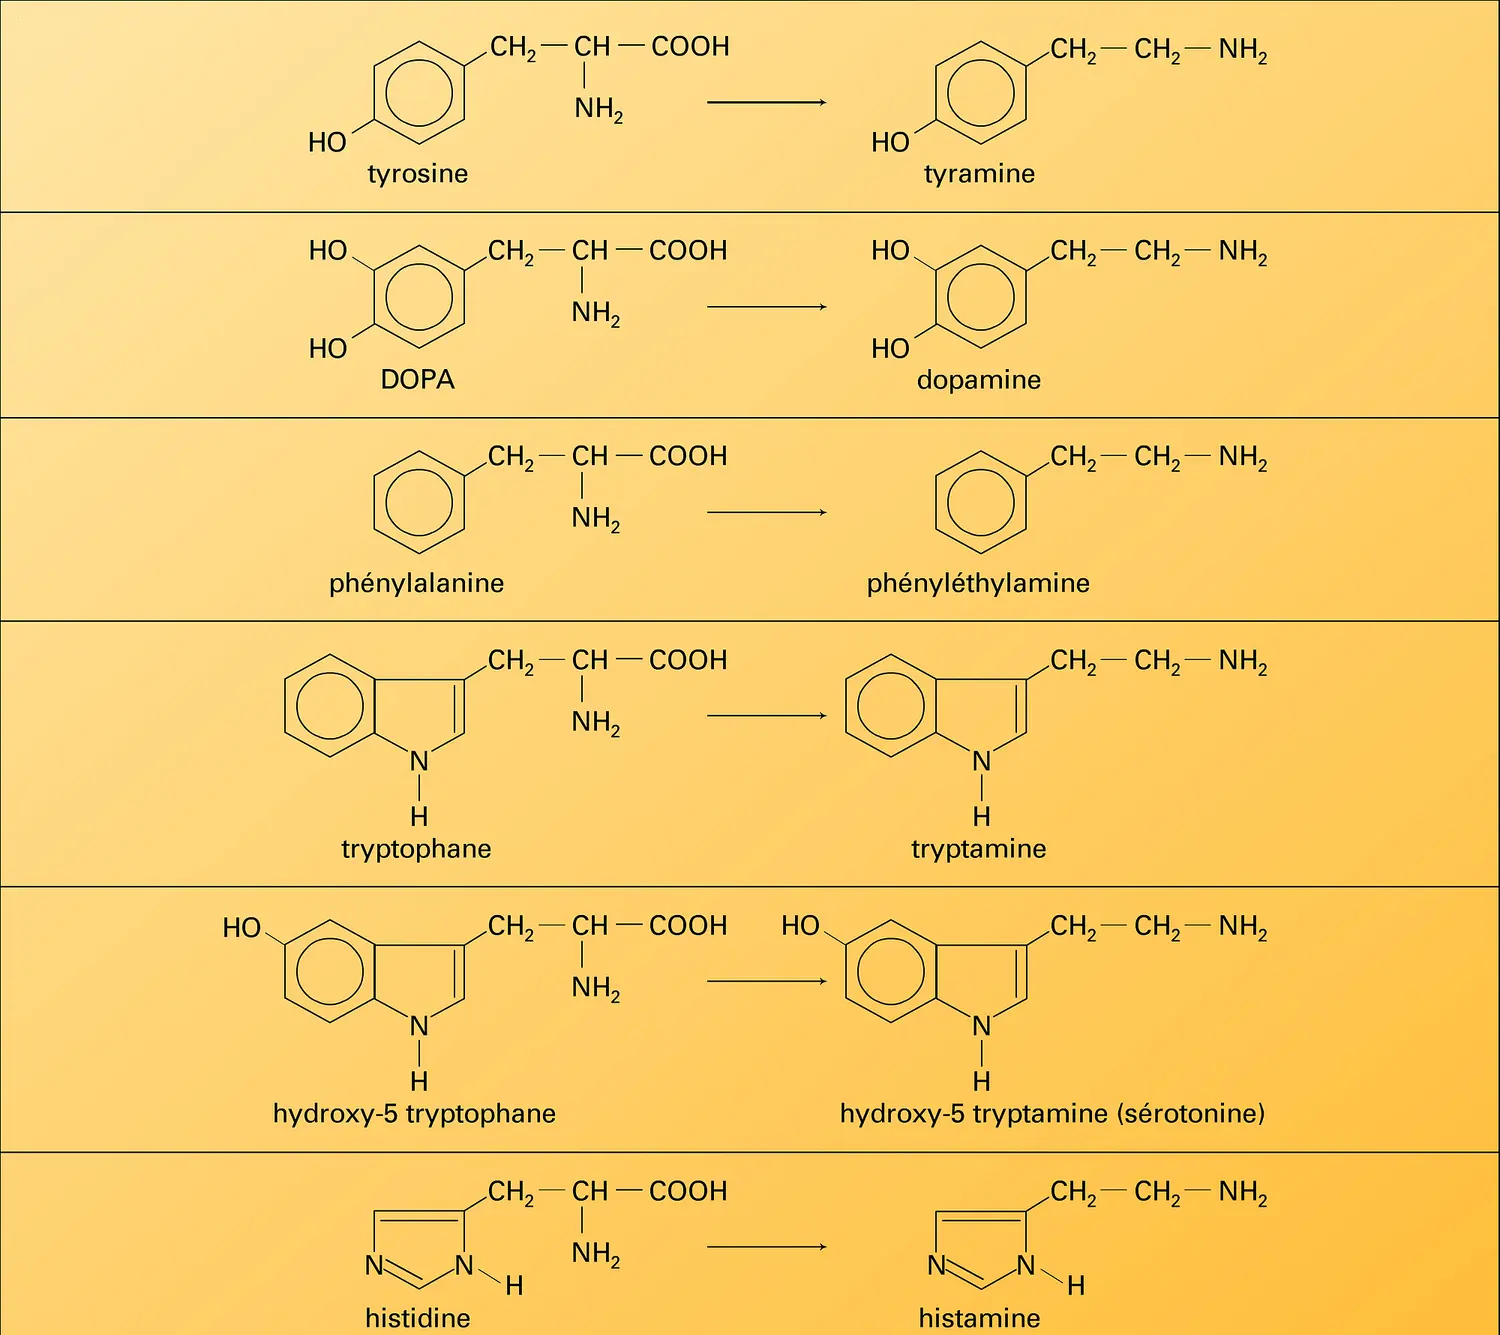 Décarboxylation des amino-acides aromatiques